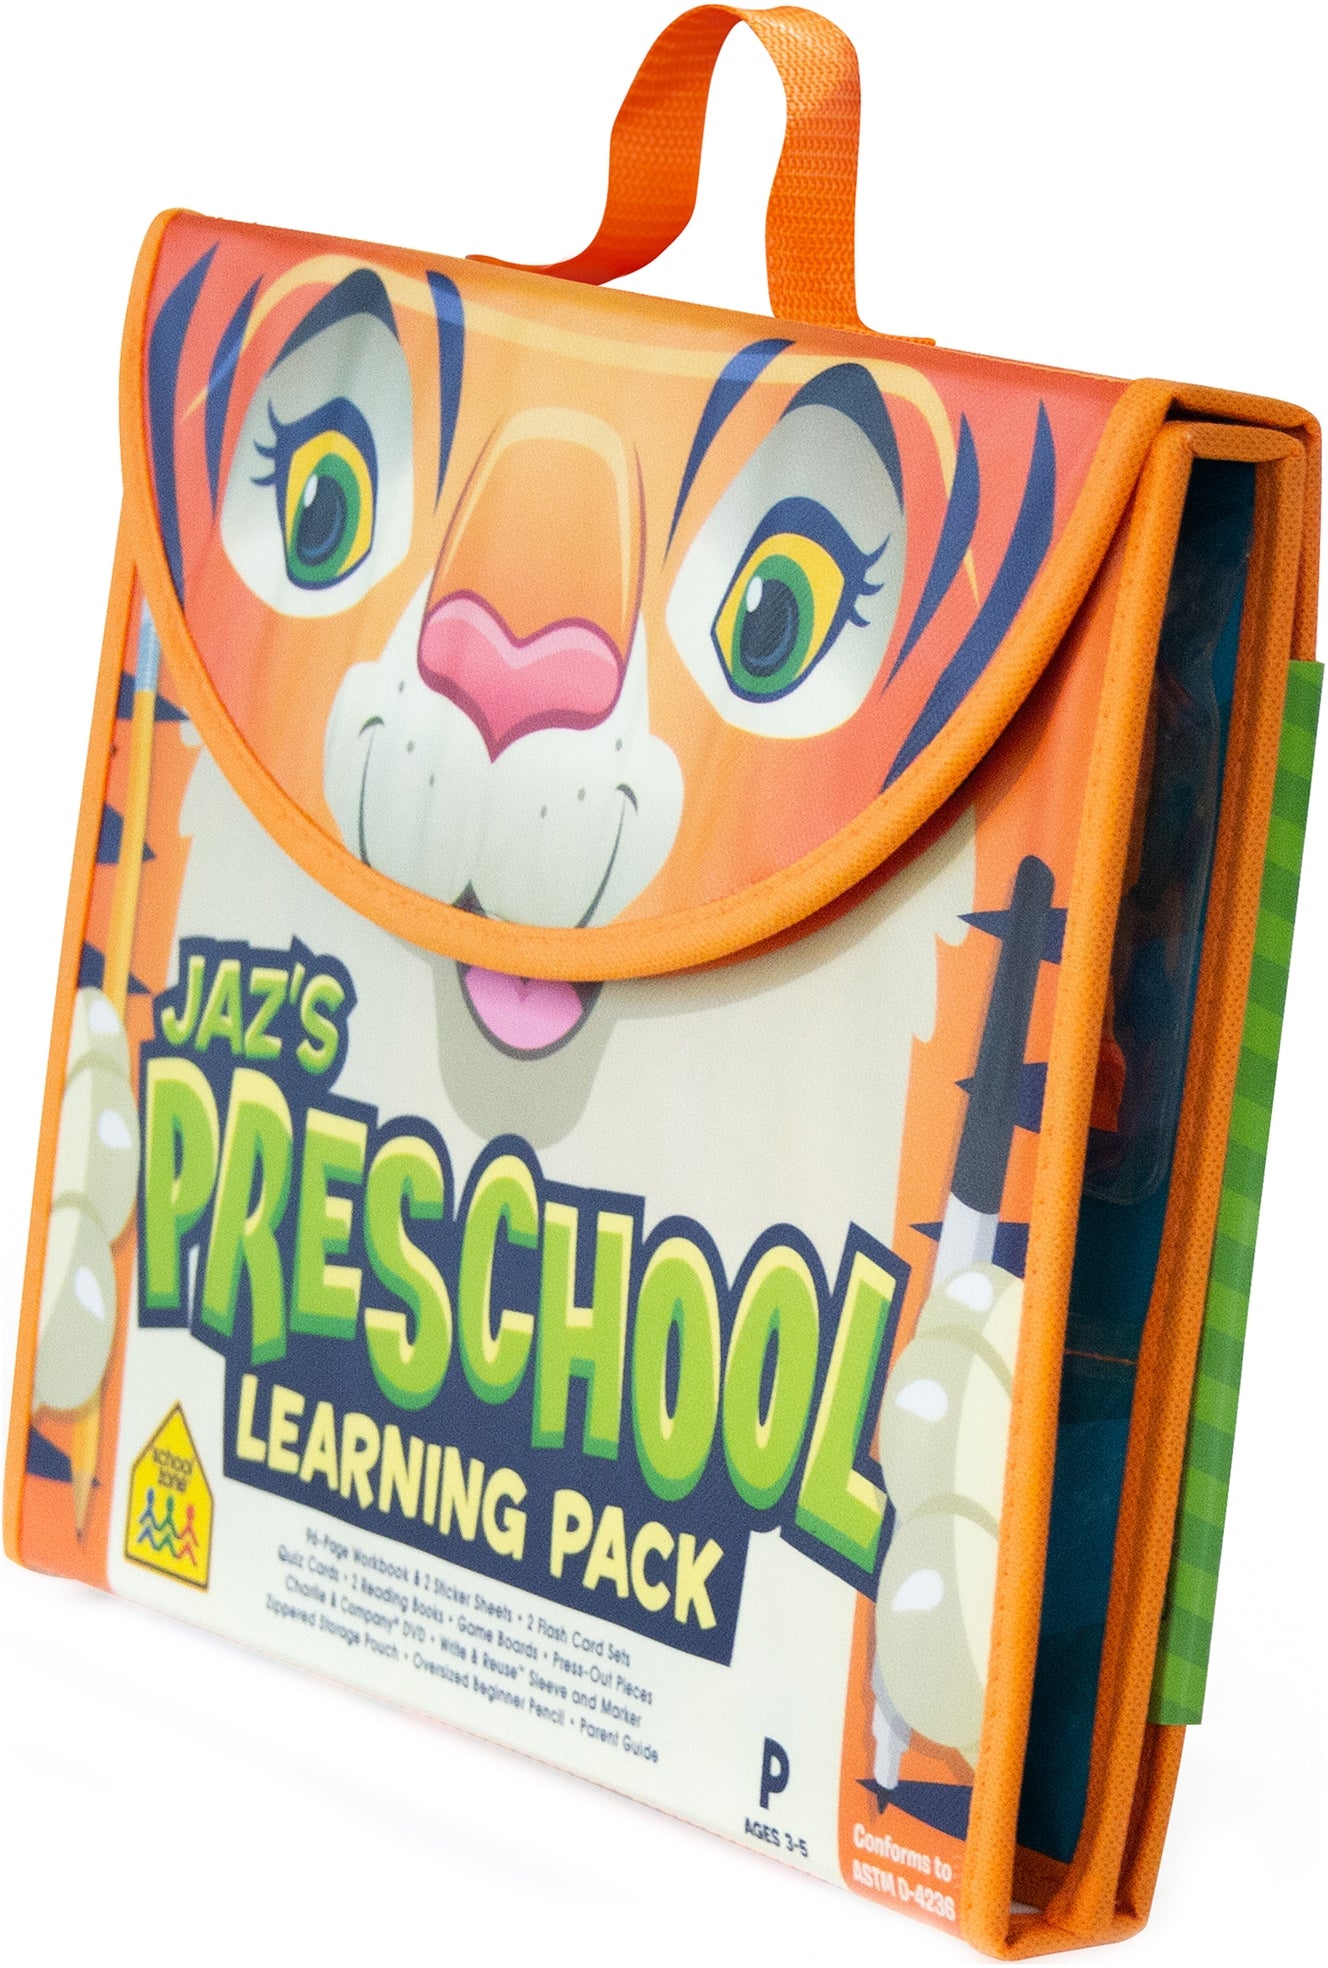 Preschool　School　Company　Zone　Publishing　Jaz's　Pack　Learning　–